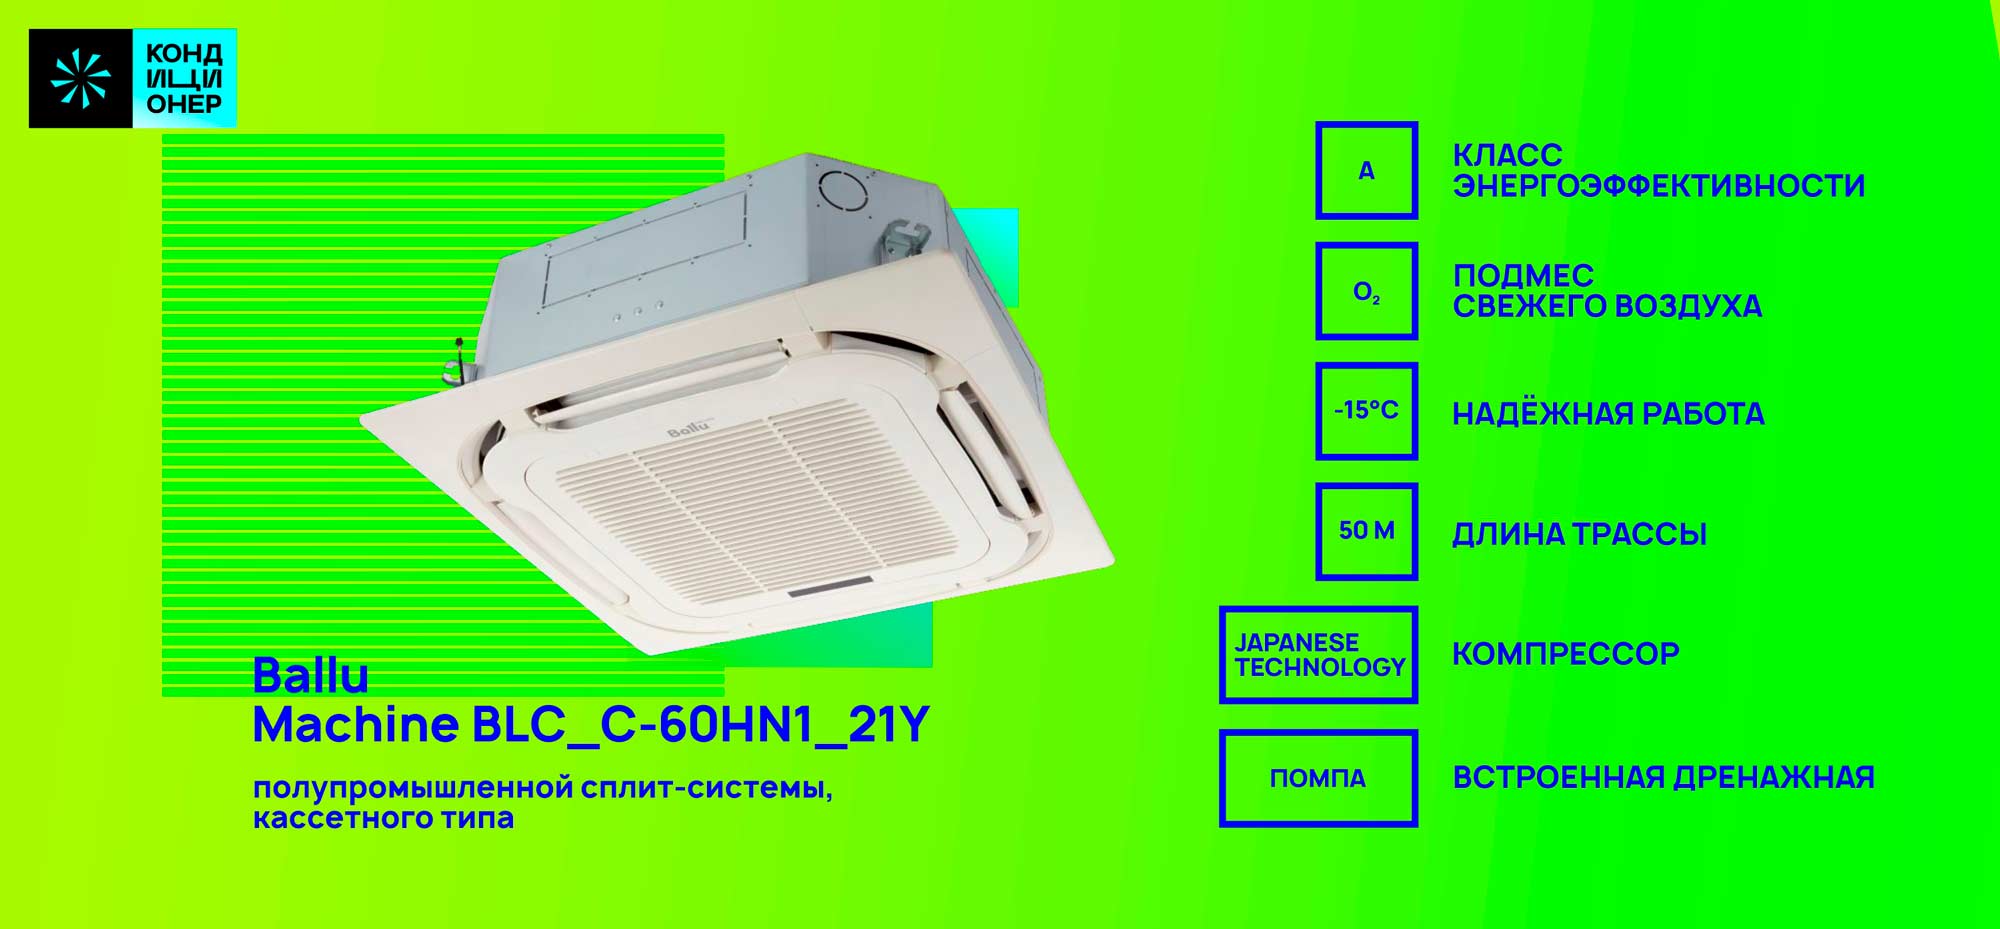 BALLU Machine BLC_C-60HN1_26